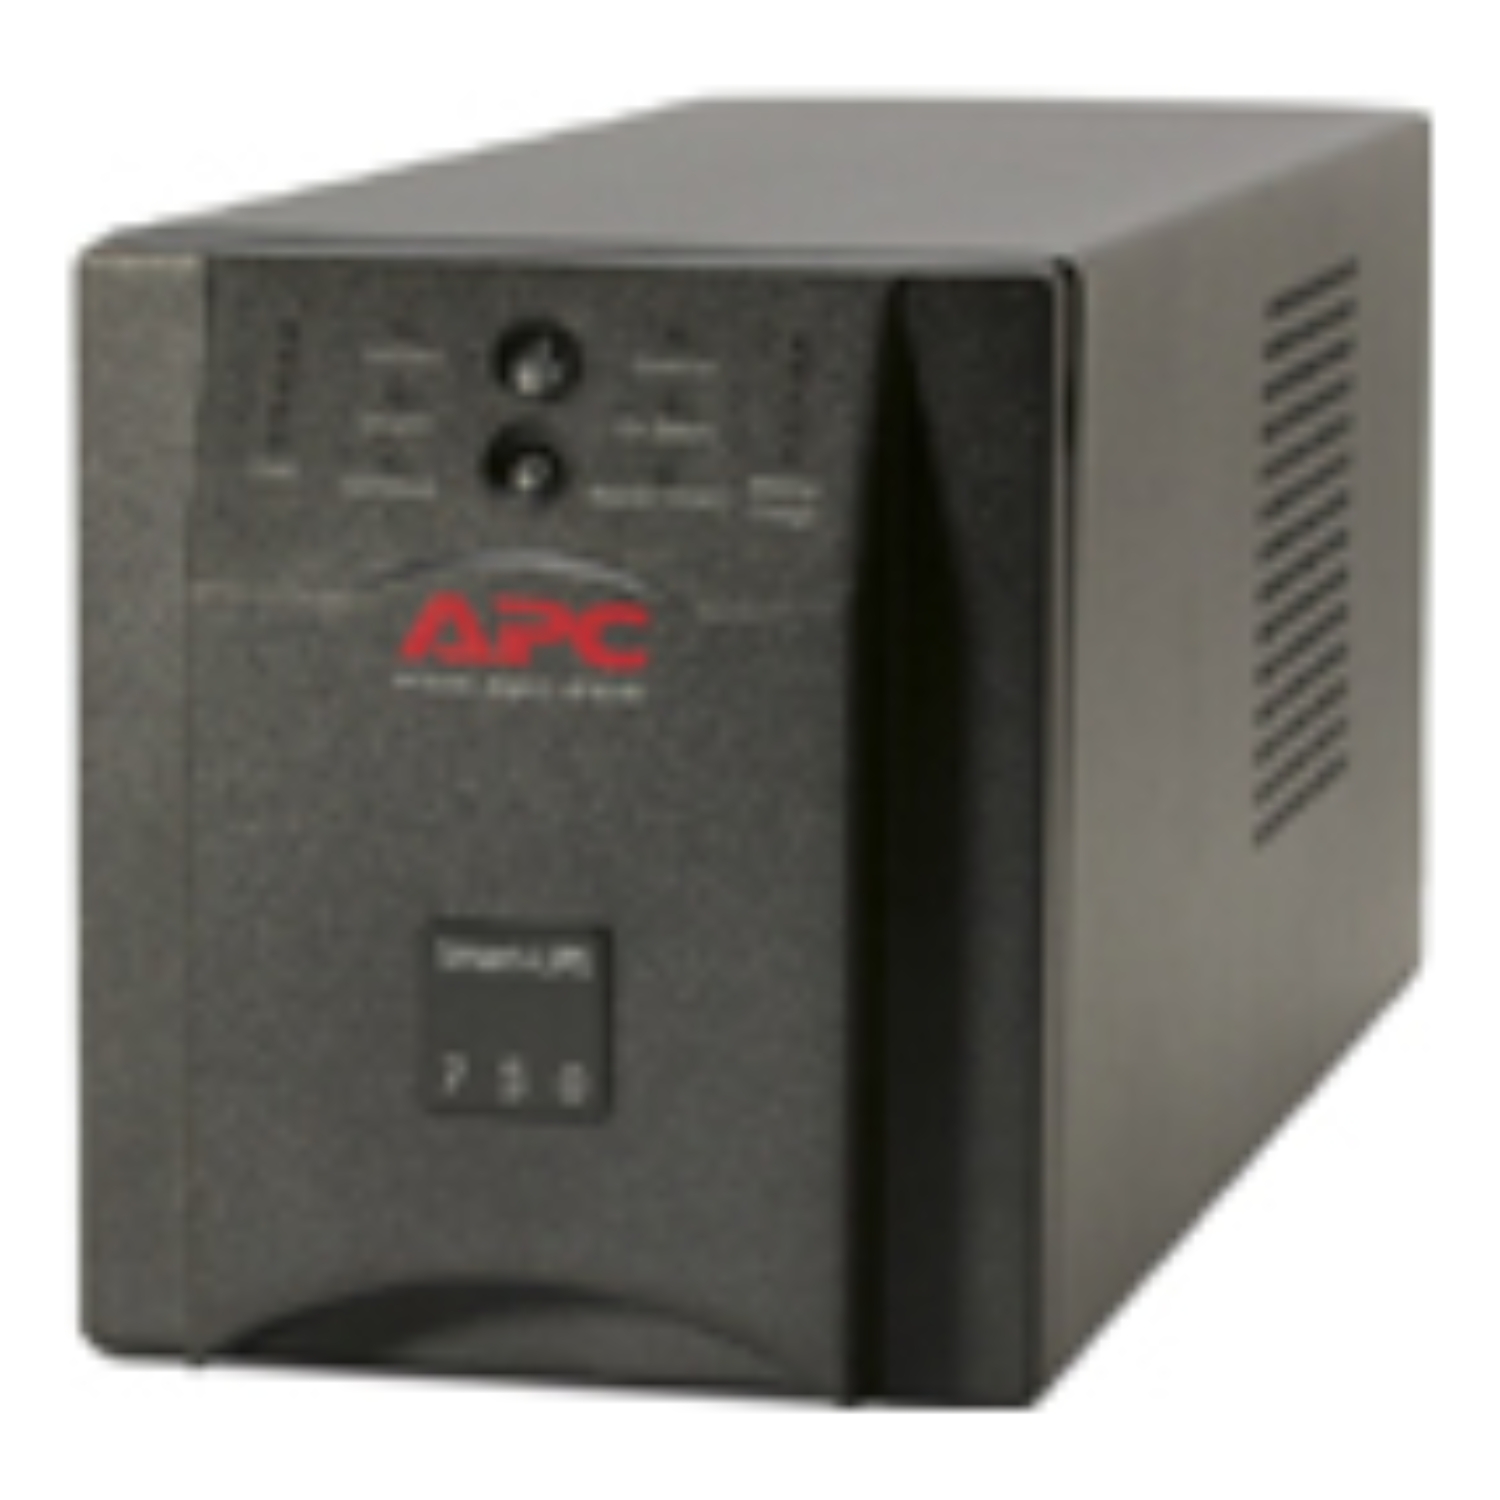 Apc - Apc Smart-ups 750VA USB & Serial - US( External ) - Ac 120 V - 750 Va  - (Discontinued by Manufacturer)